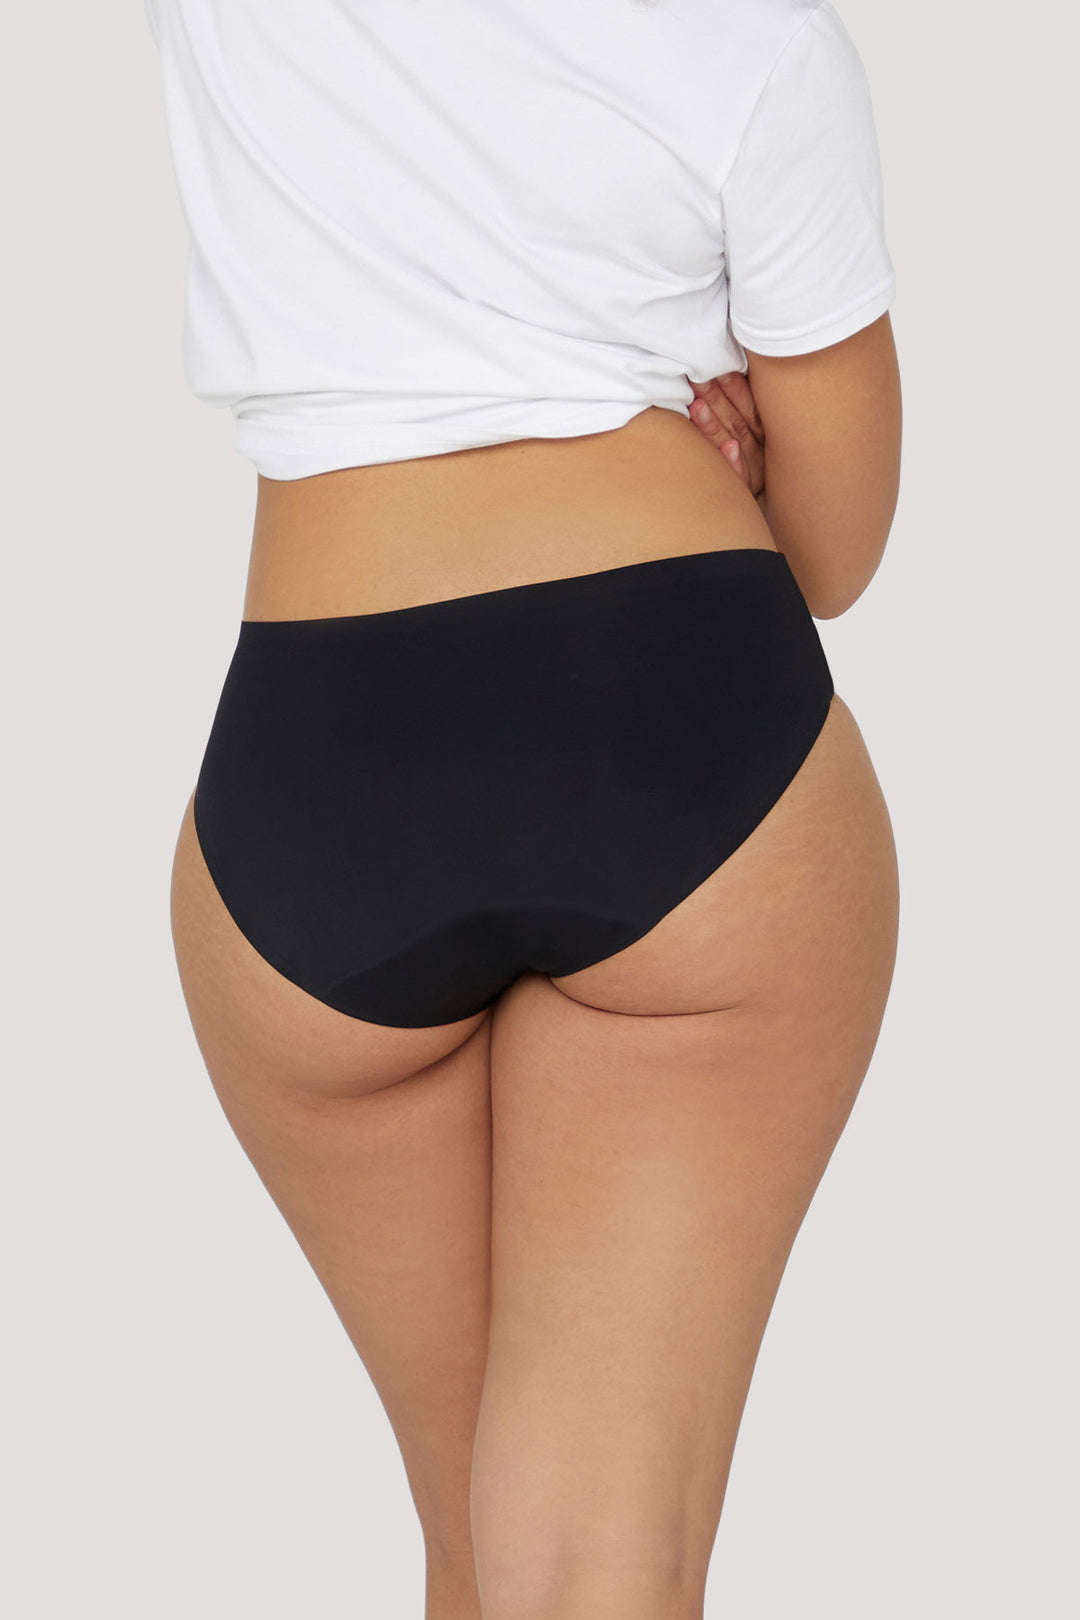 Light Bladder Leakage Underwear | Bella Bodies Australia | Black | Back